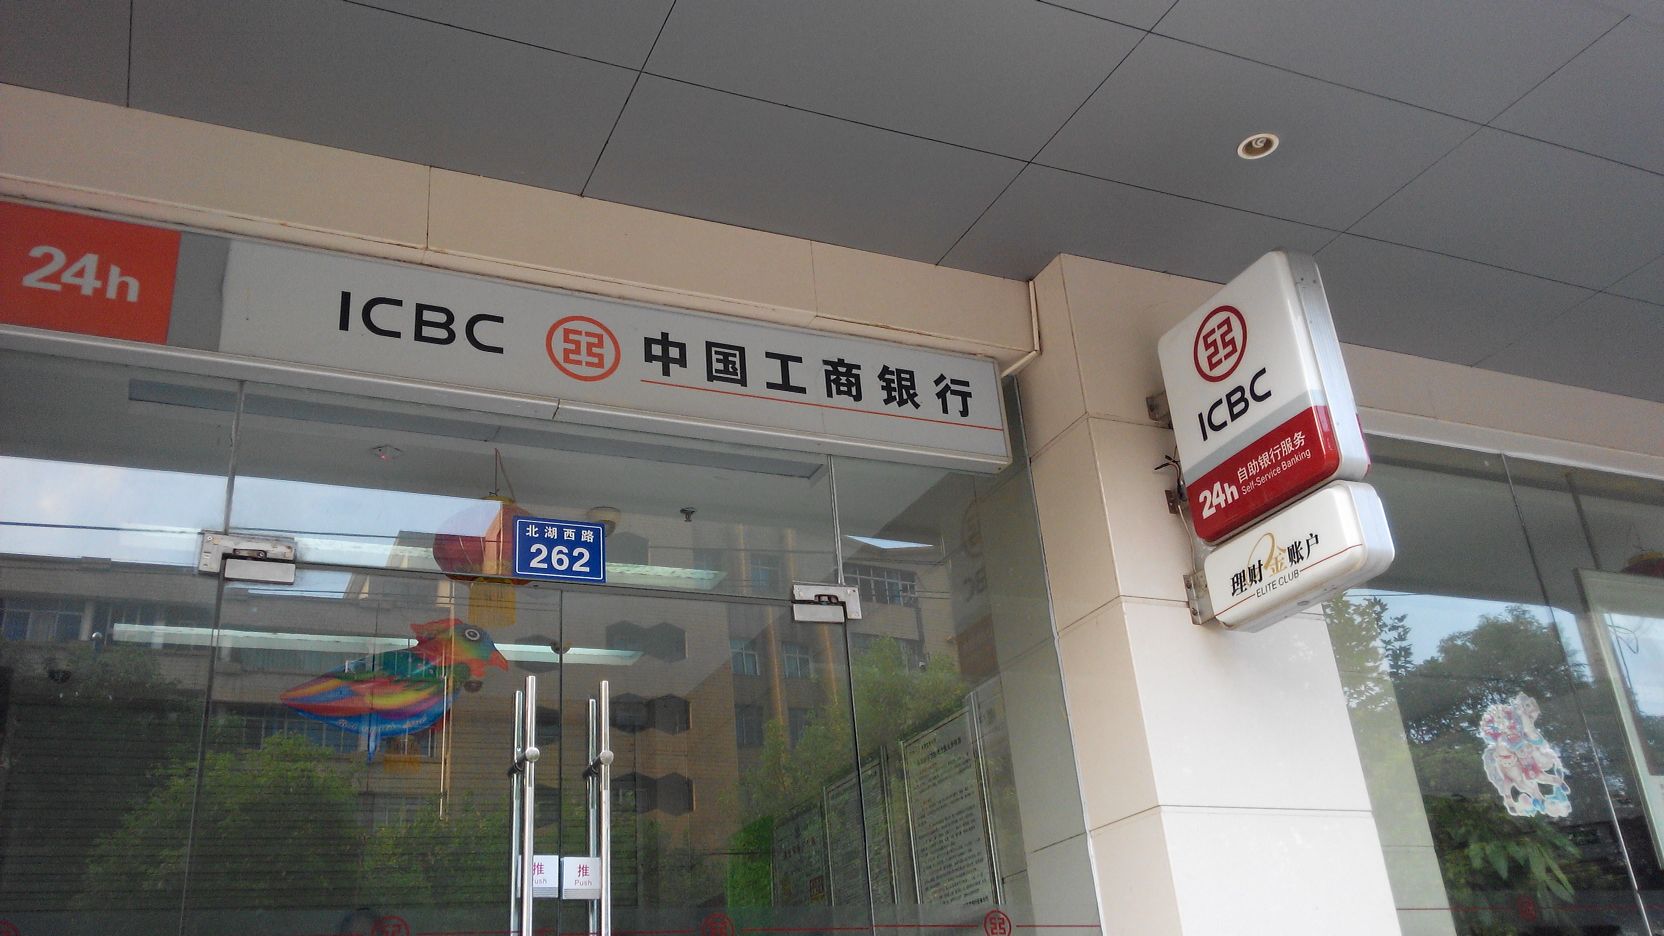 中國工商銀行24小時自助銀行(北湖西路支行)